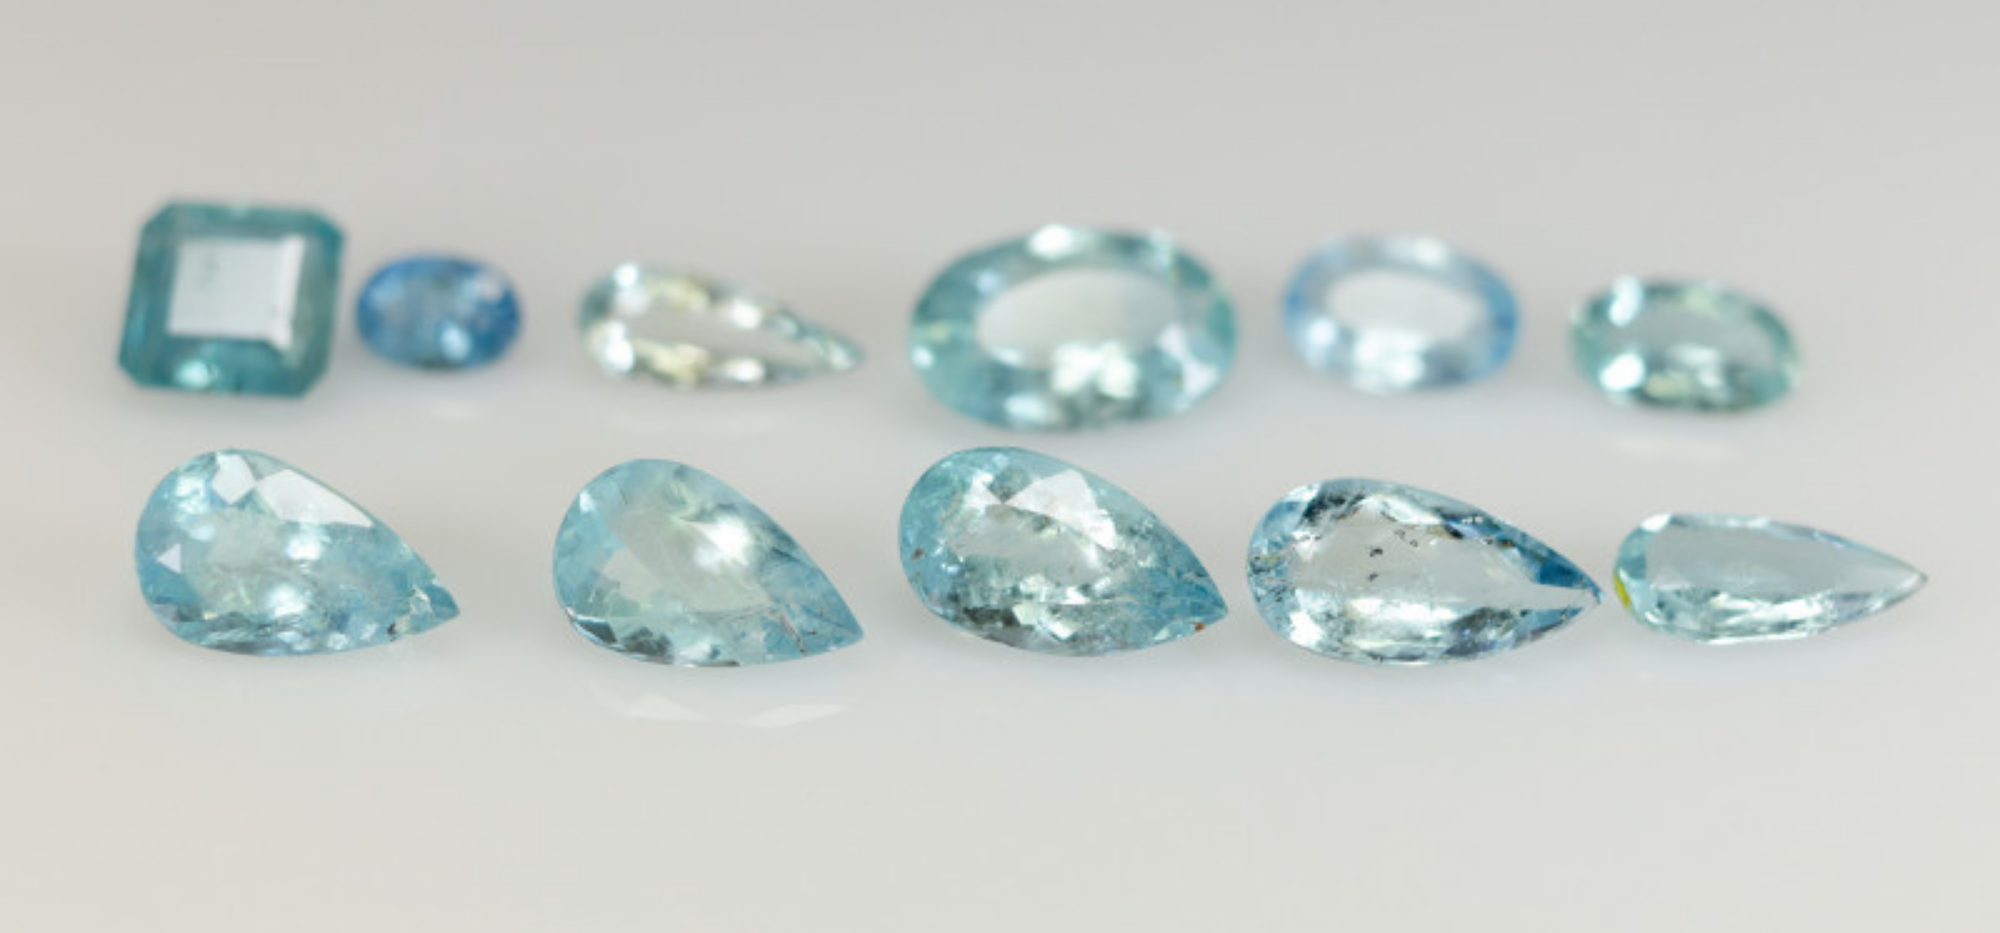 Natural Aquamarine crystal showing its natural form